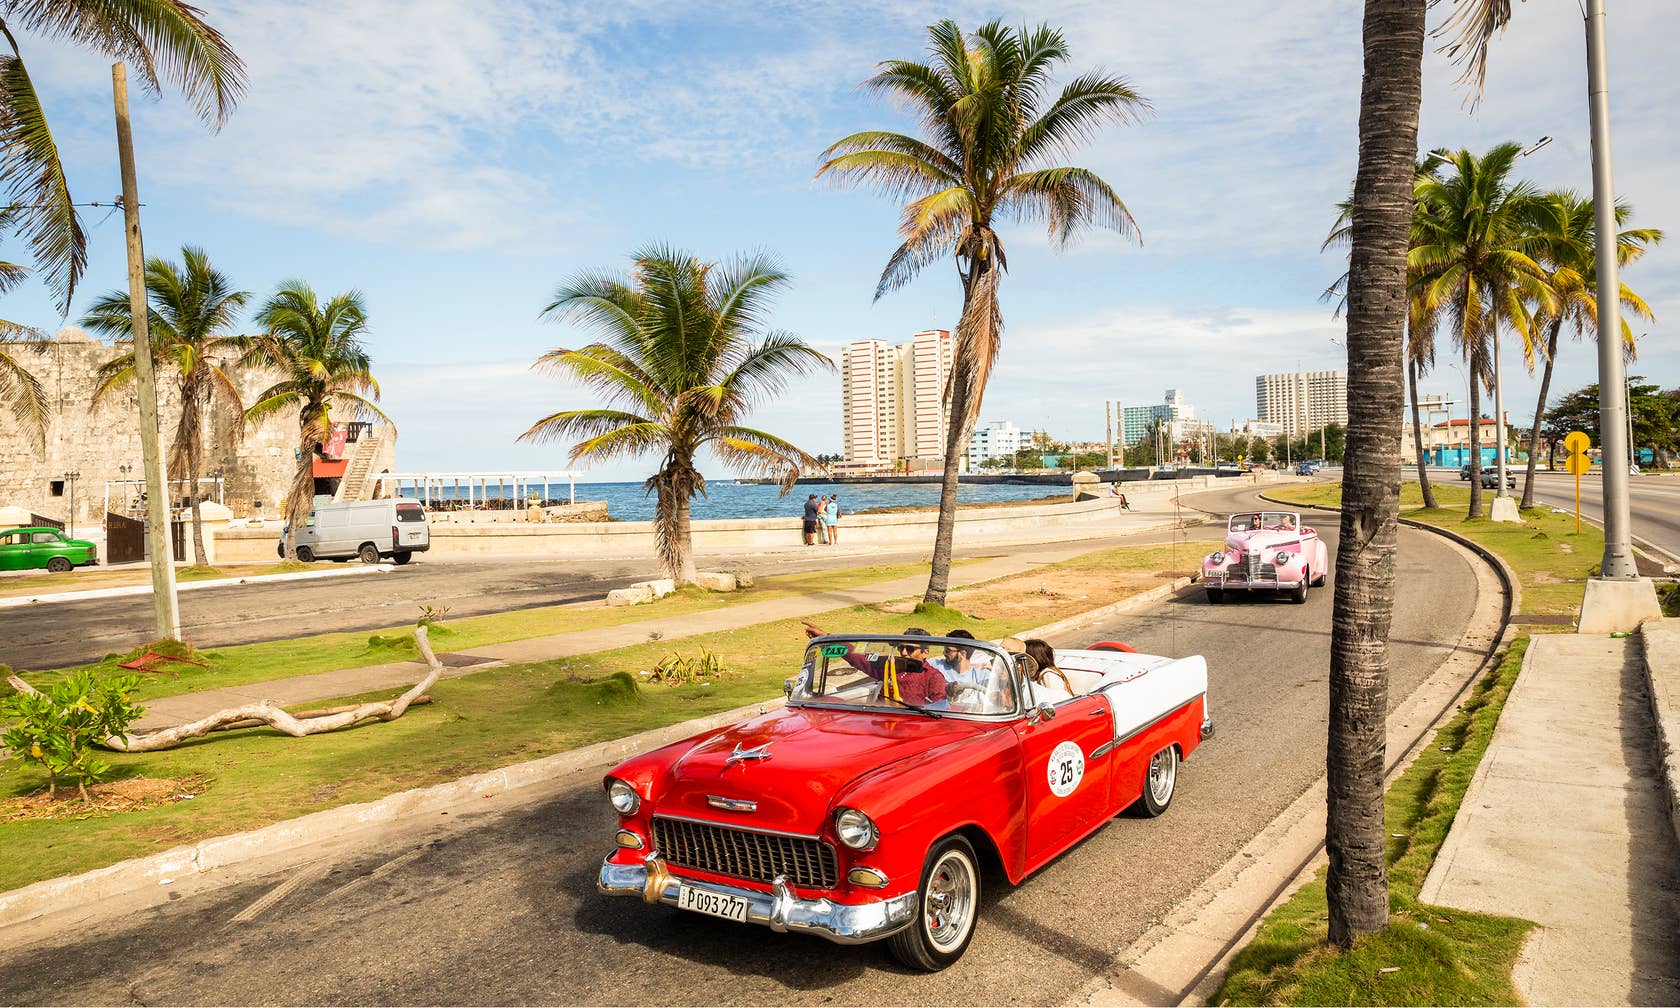 Sewa tempat di Kuba